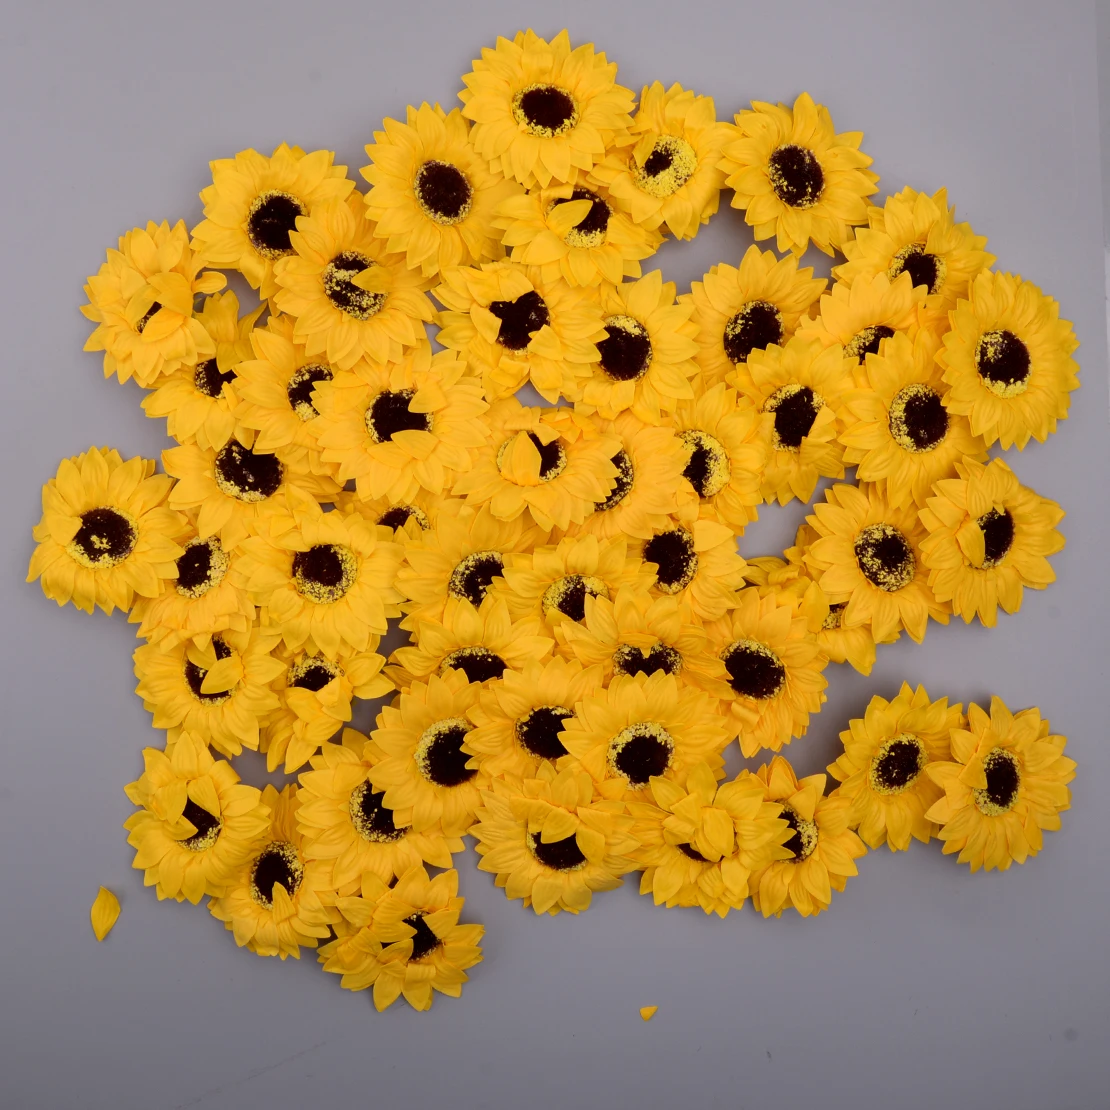 

50 шт. 8 см ароматические искусственные мини-мыло-Подсолнух цветы цветочный дом вечерние свадебные украшения на день рождения украшения